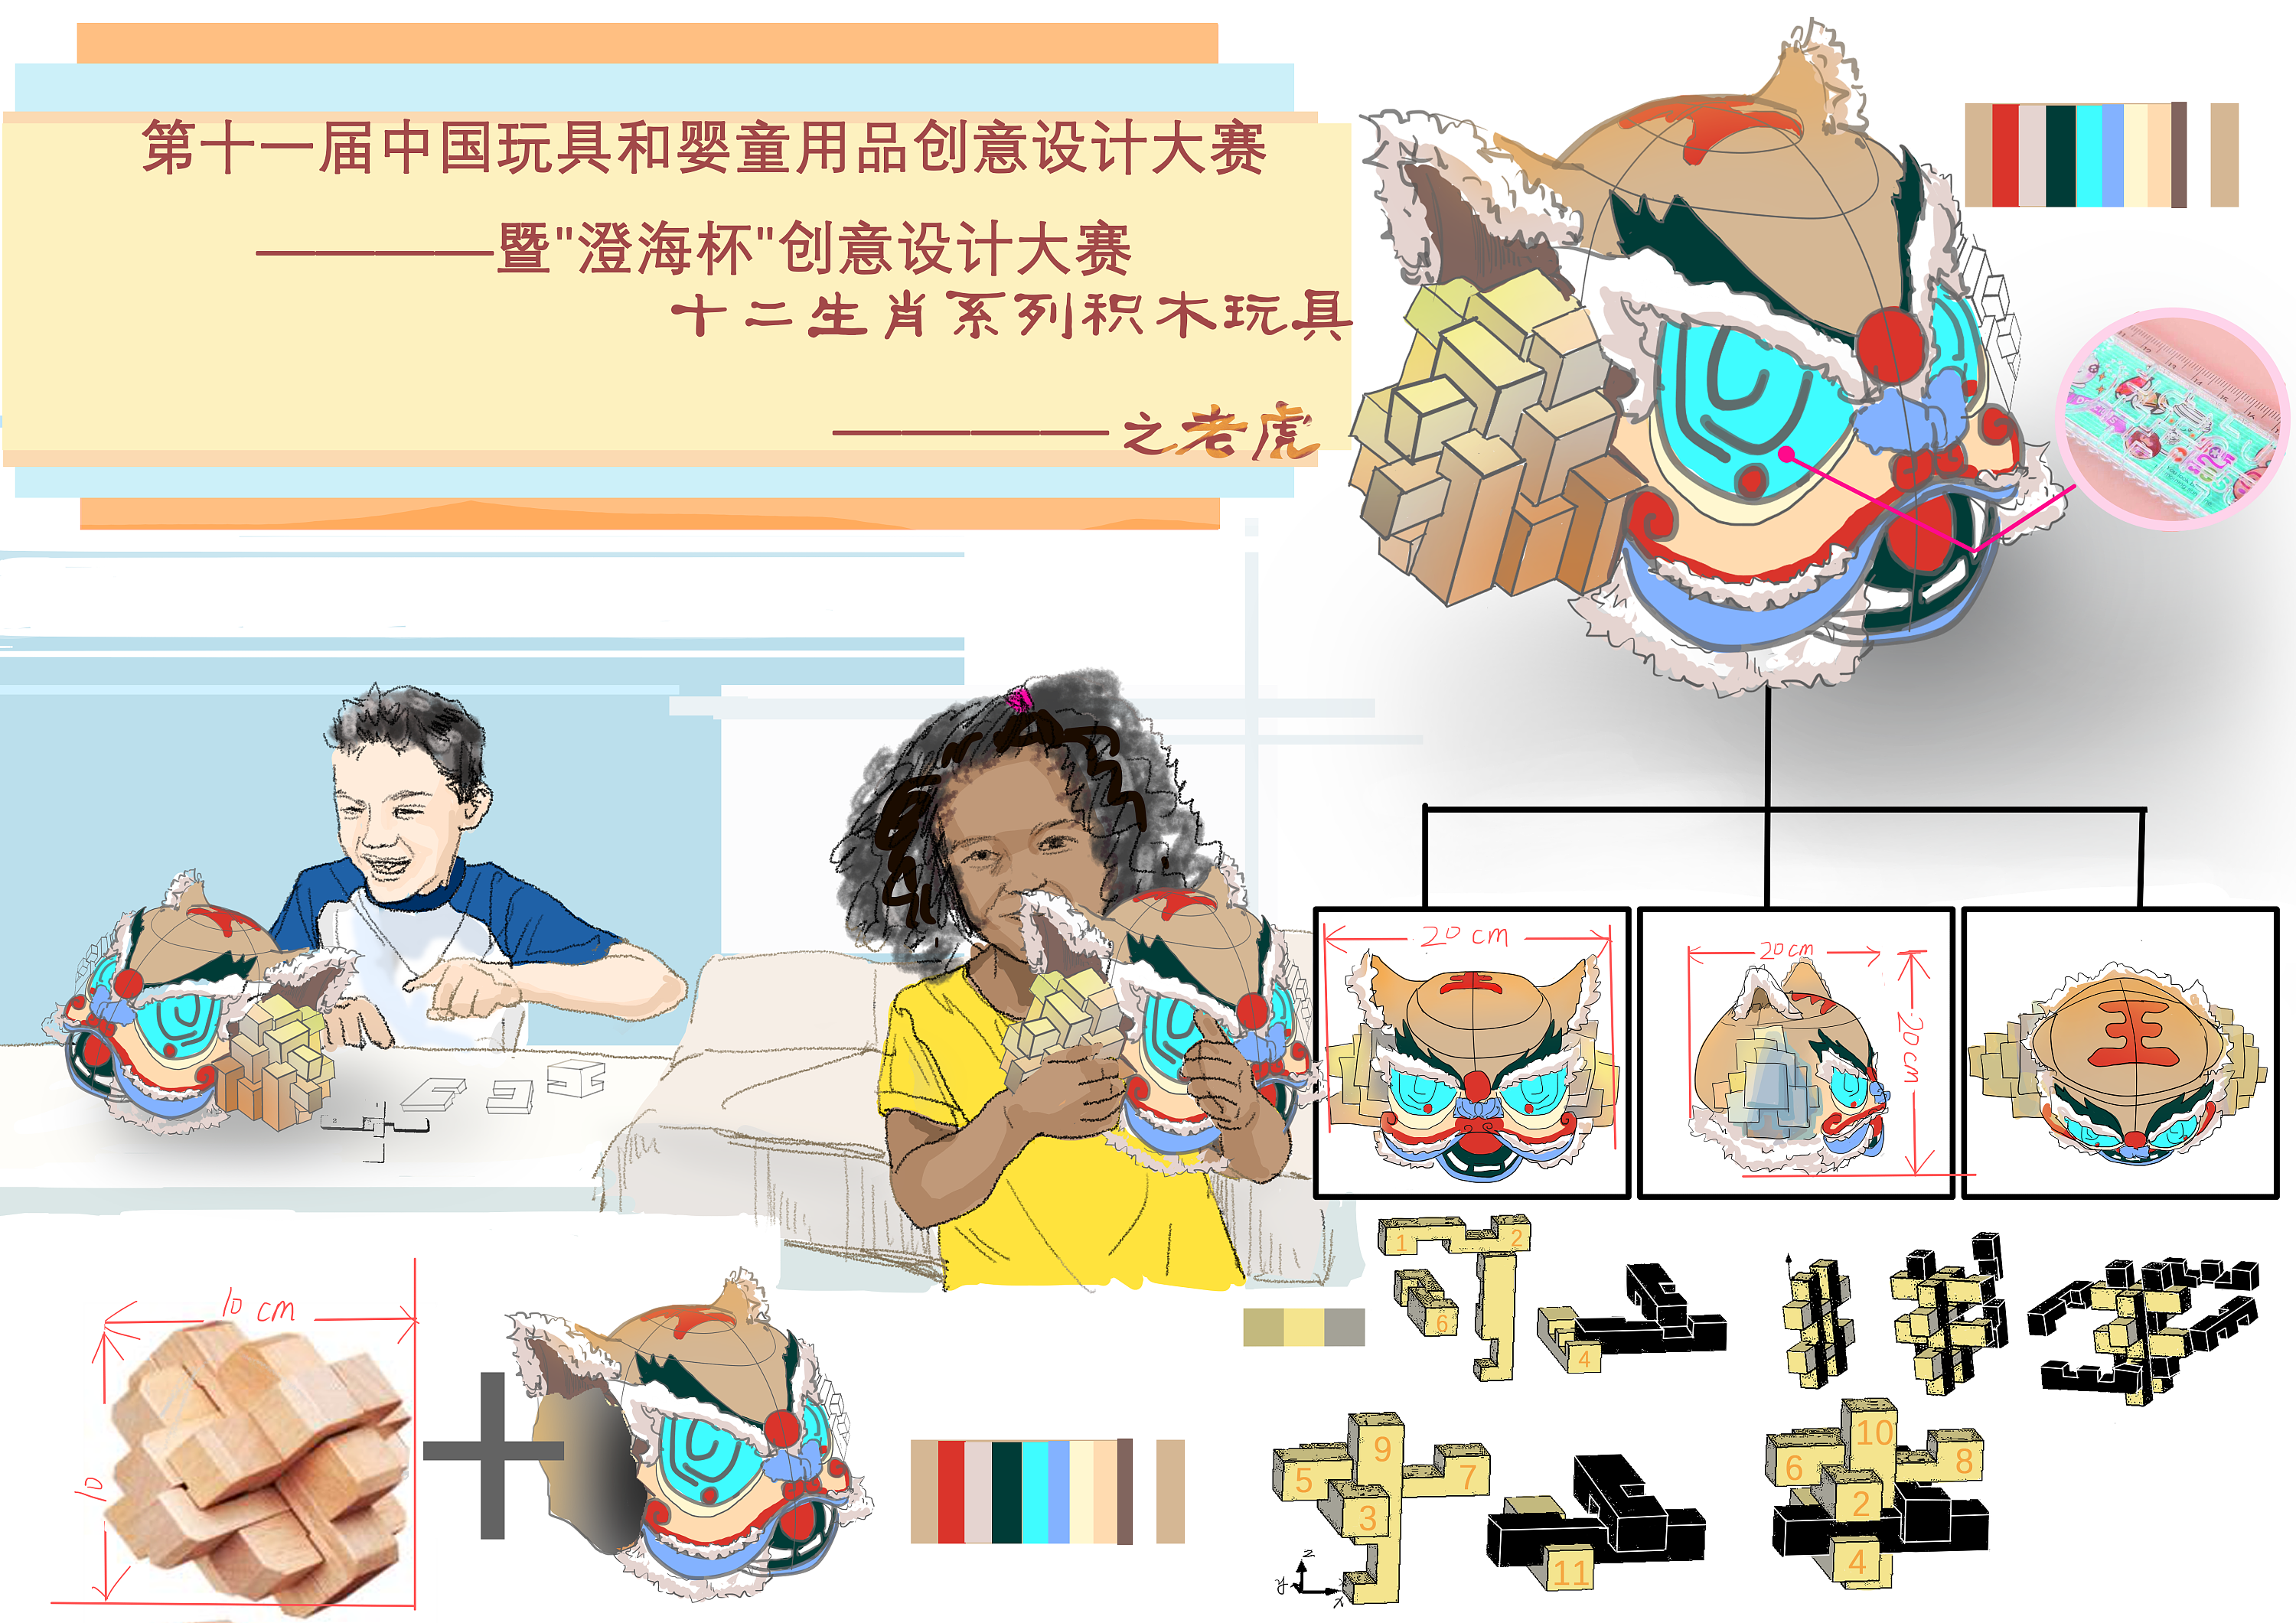 中国玩具设计大赛获奖图片